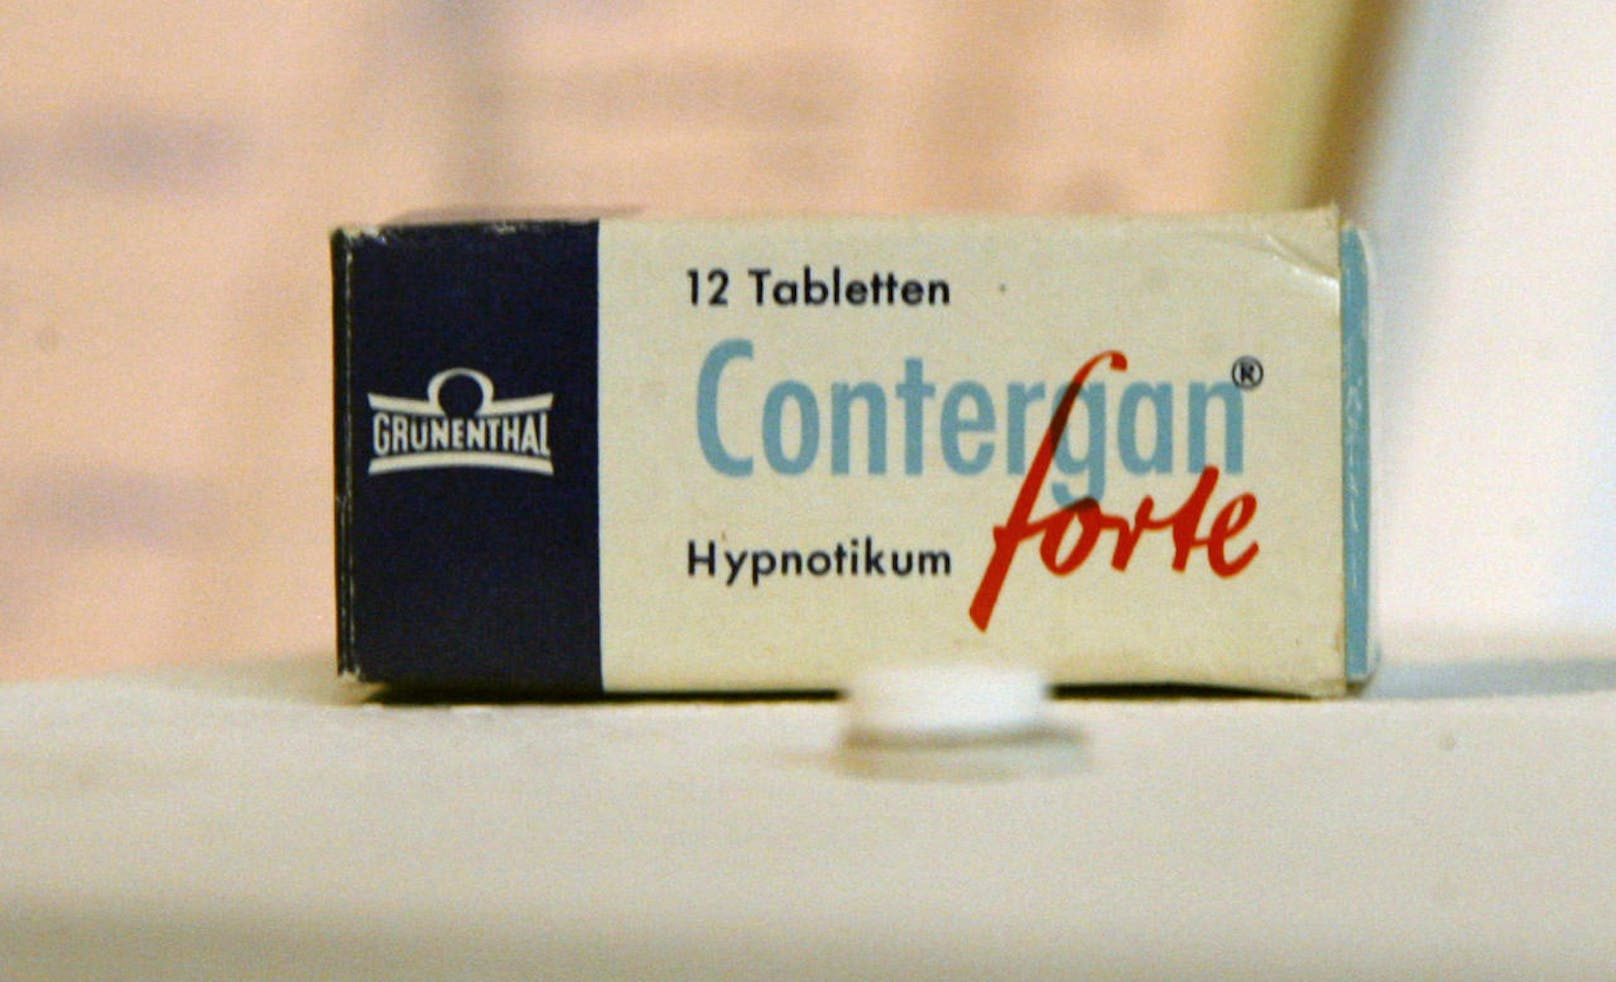 Die Fälle erinnern an den "Contergan-Skandal": Das Medikament Contergan, das zunächst als unbedenklich für Schwangere eingestuft wurde, sorgte in den 1960er Jahren für schwere Missbildungen bei Zehntausenden von Kindern.